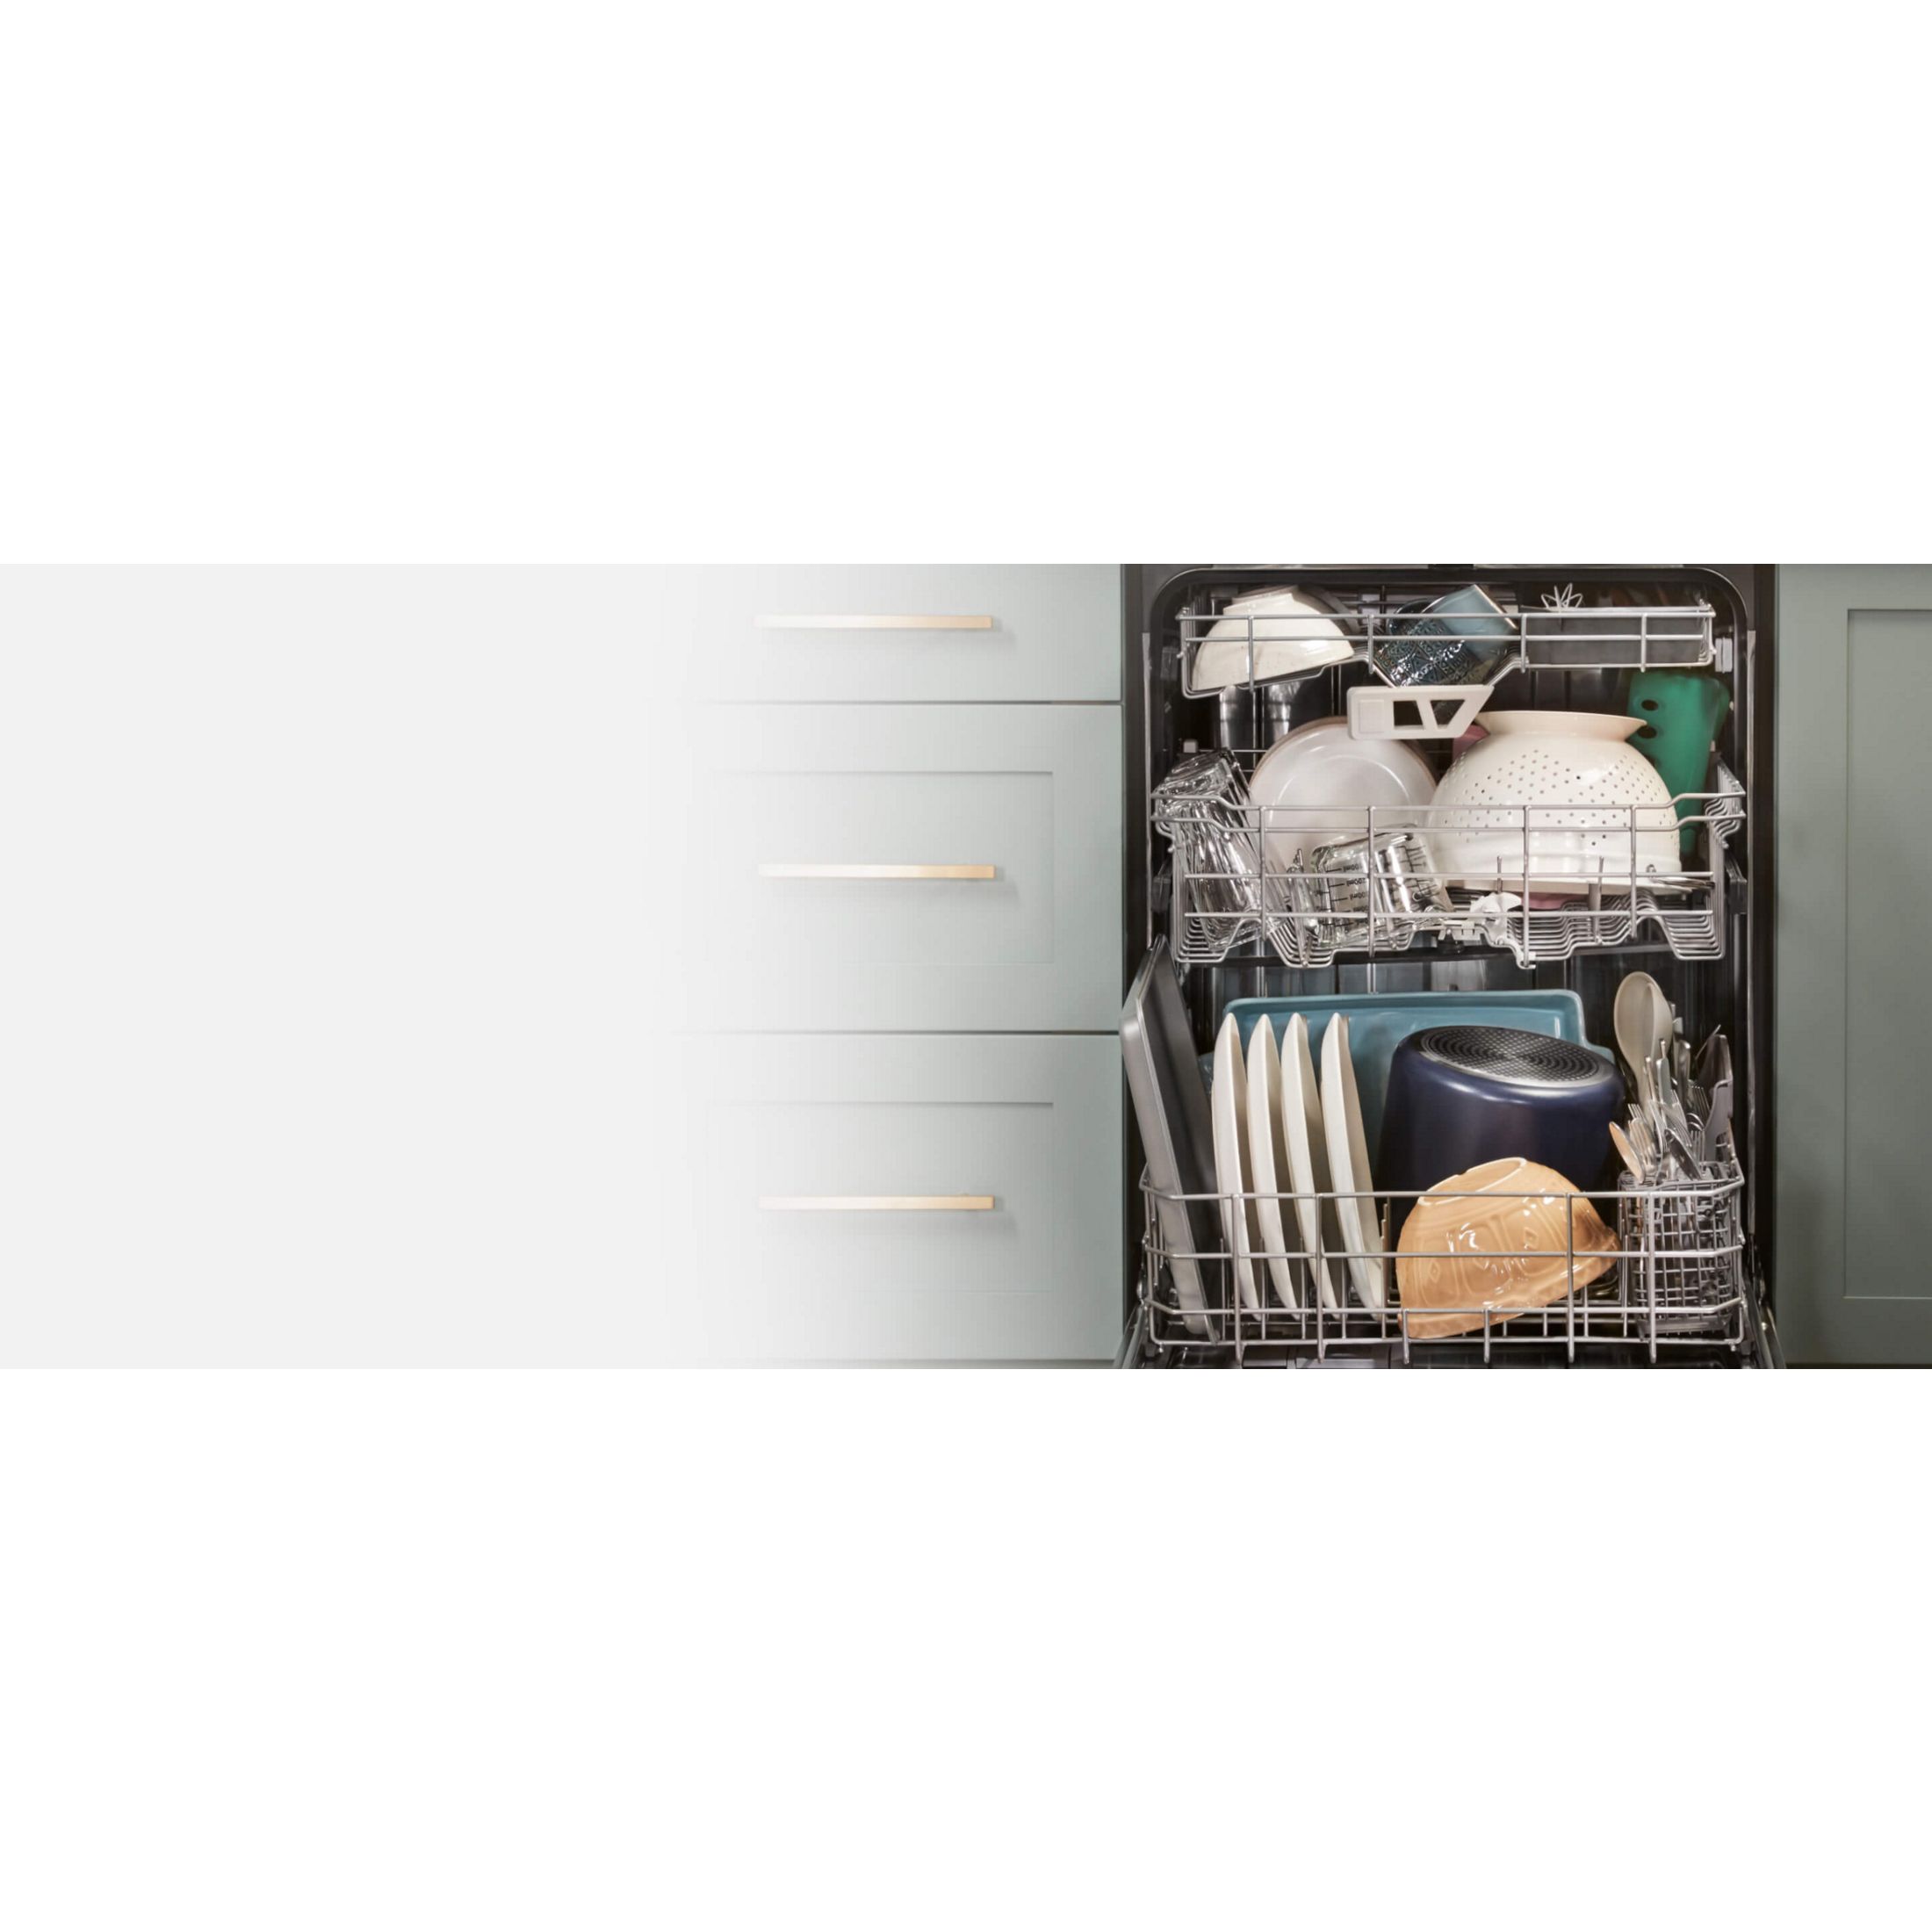 3rd Rack Dishwashers - Large Capacity Dishwashers With 3 Racks